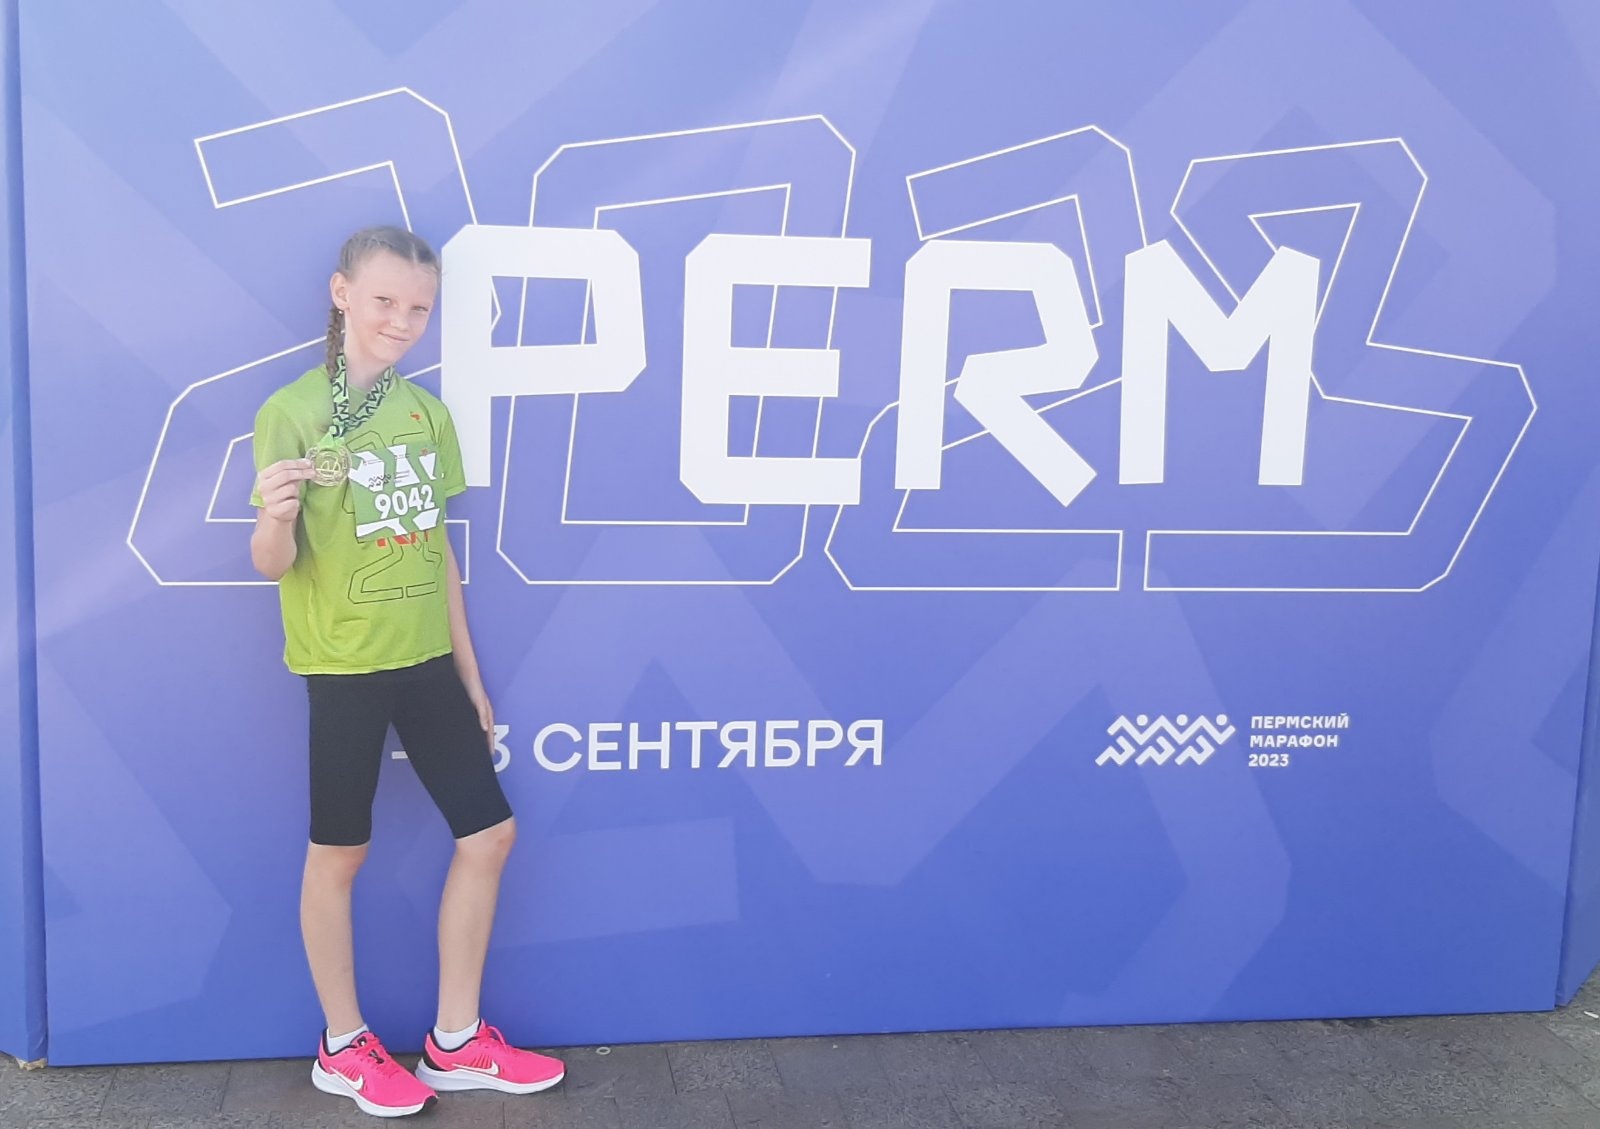 Атлетик пермь. Пермский марафон 2023 футболка.